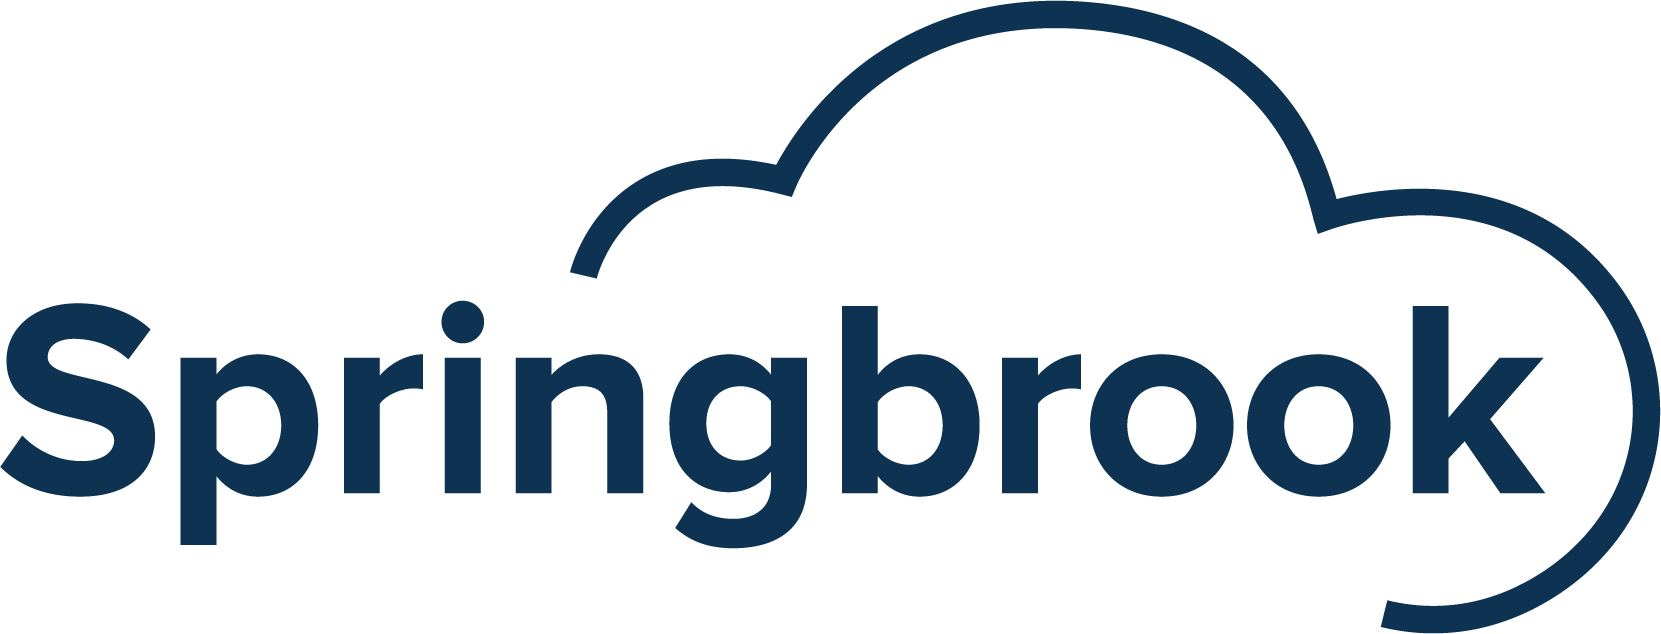 Springbrook Software logo